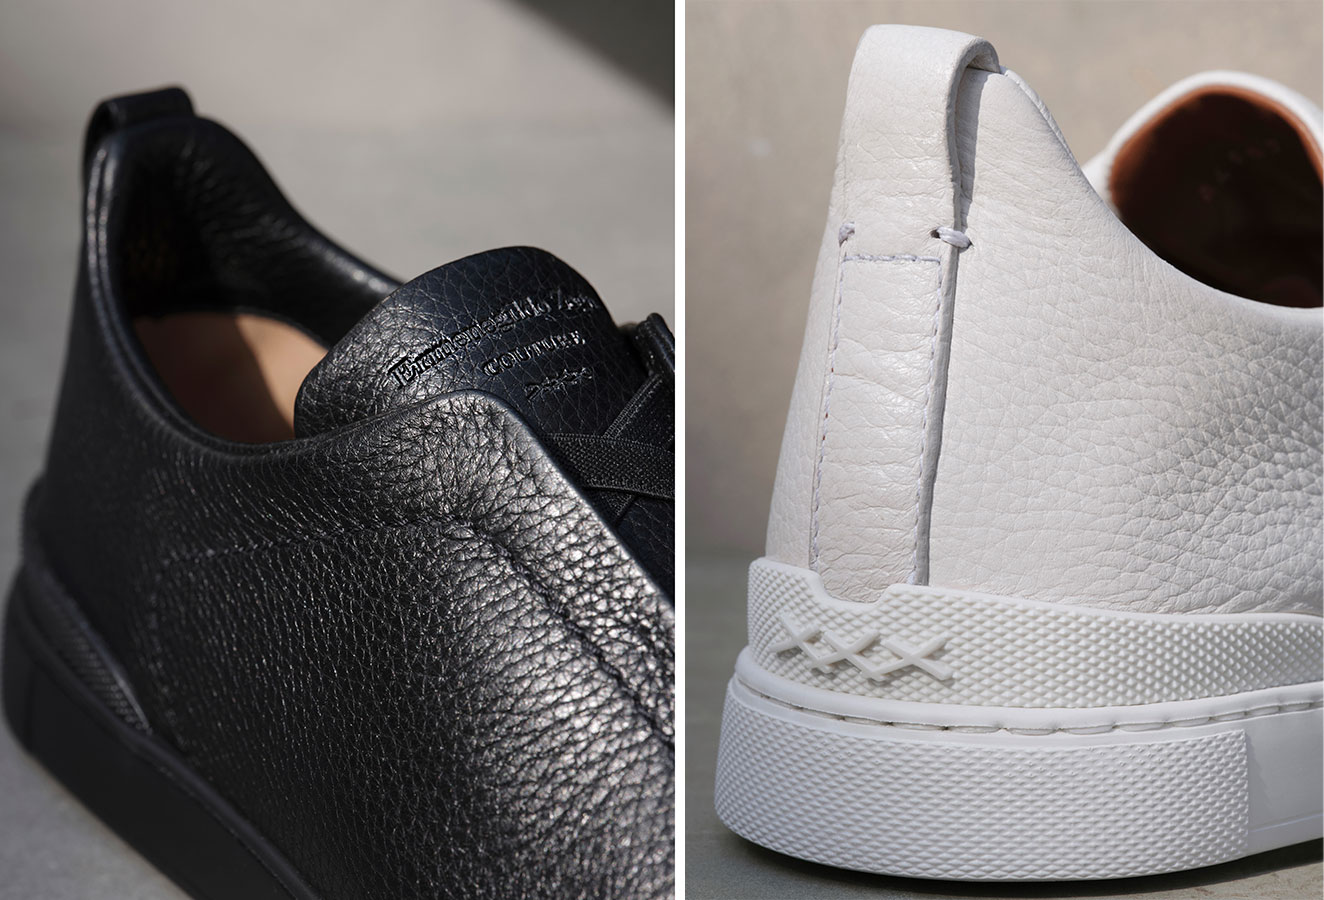 Zegna nâng cấp đôi giày thể thao Triple Stitch với phiên bản xỏ chân